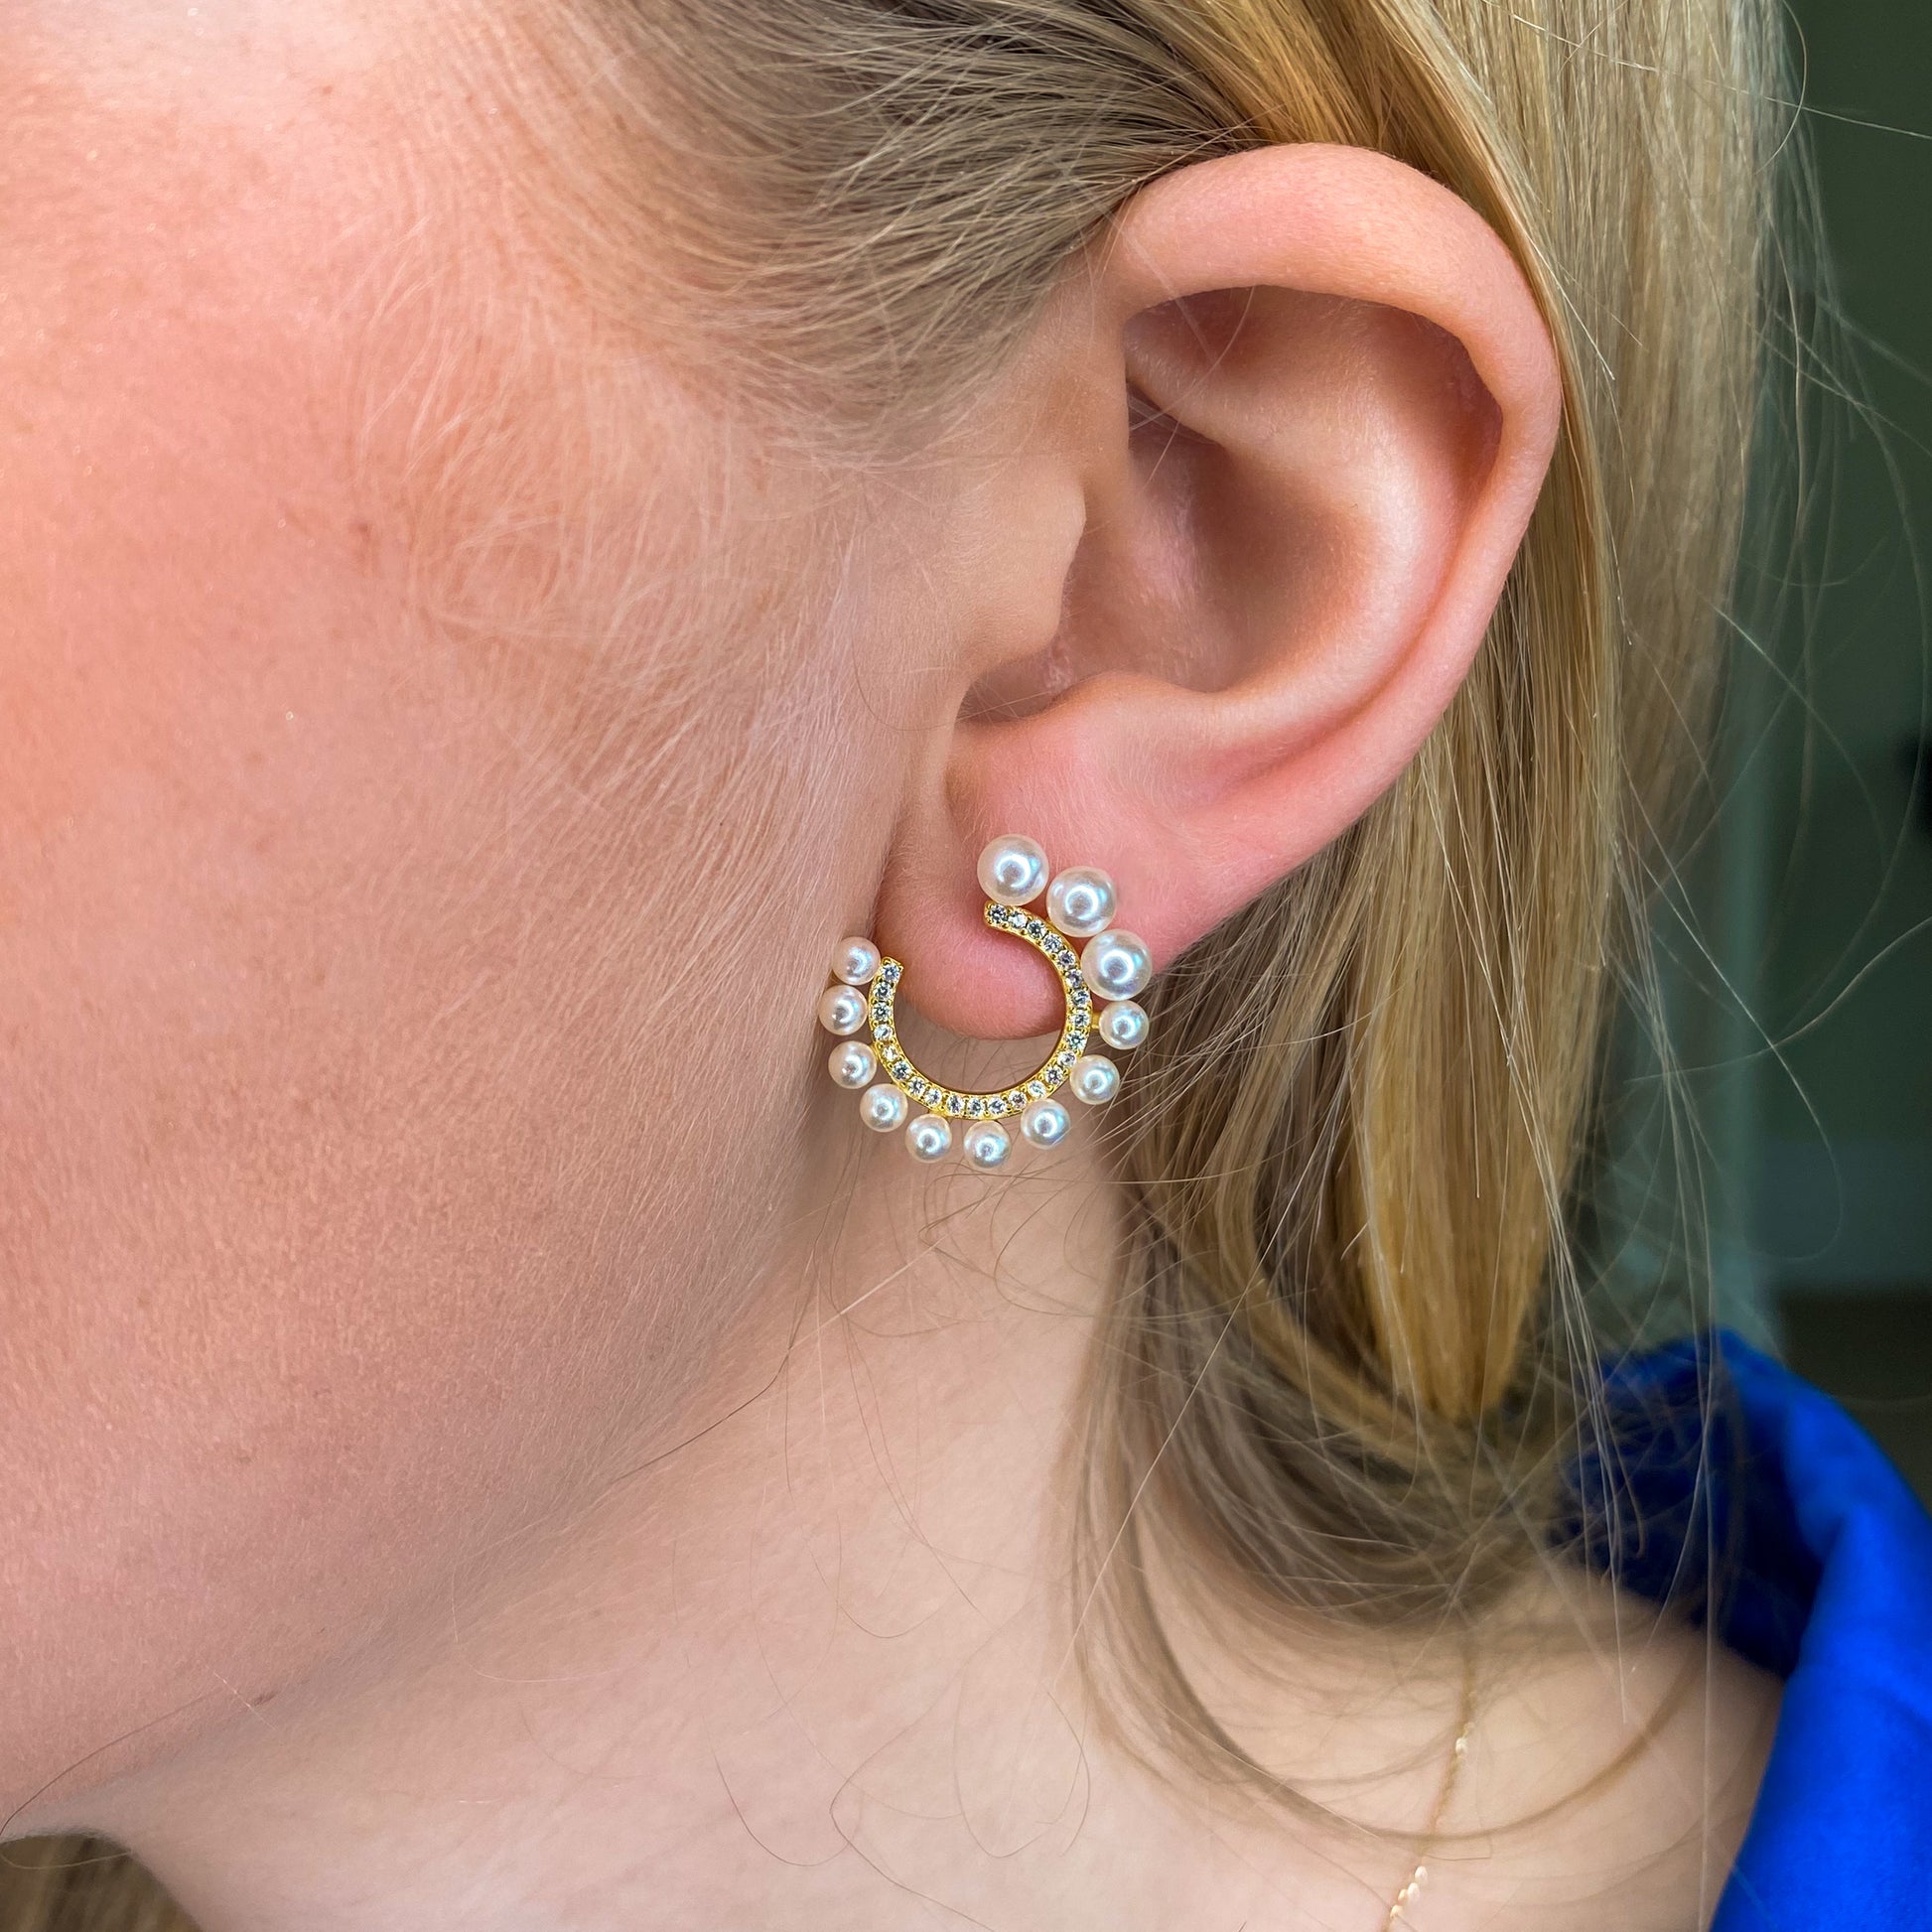 Sunshine Pearl & CZ Swirl Stud Earrings - John Ross Jewellers